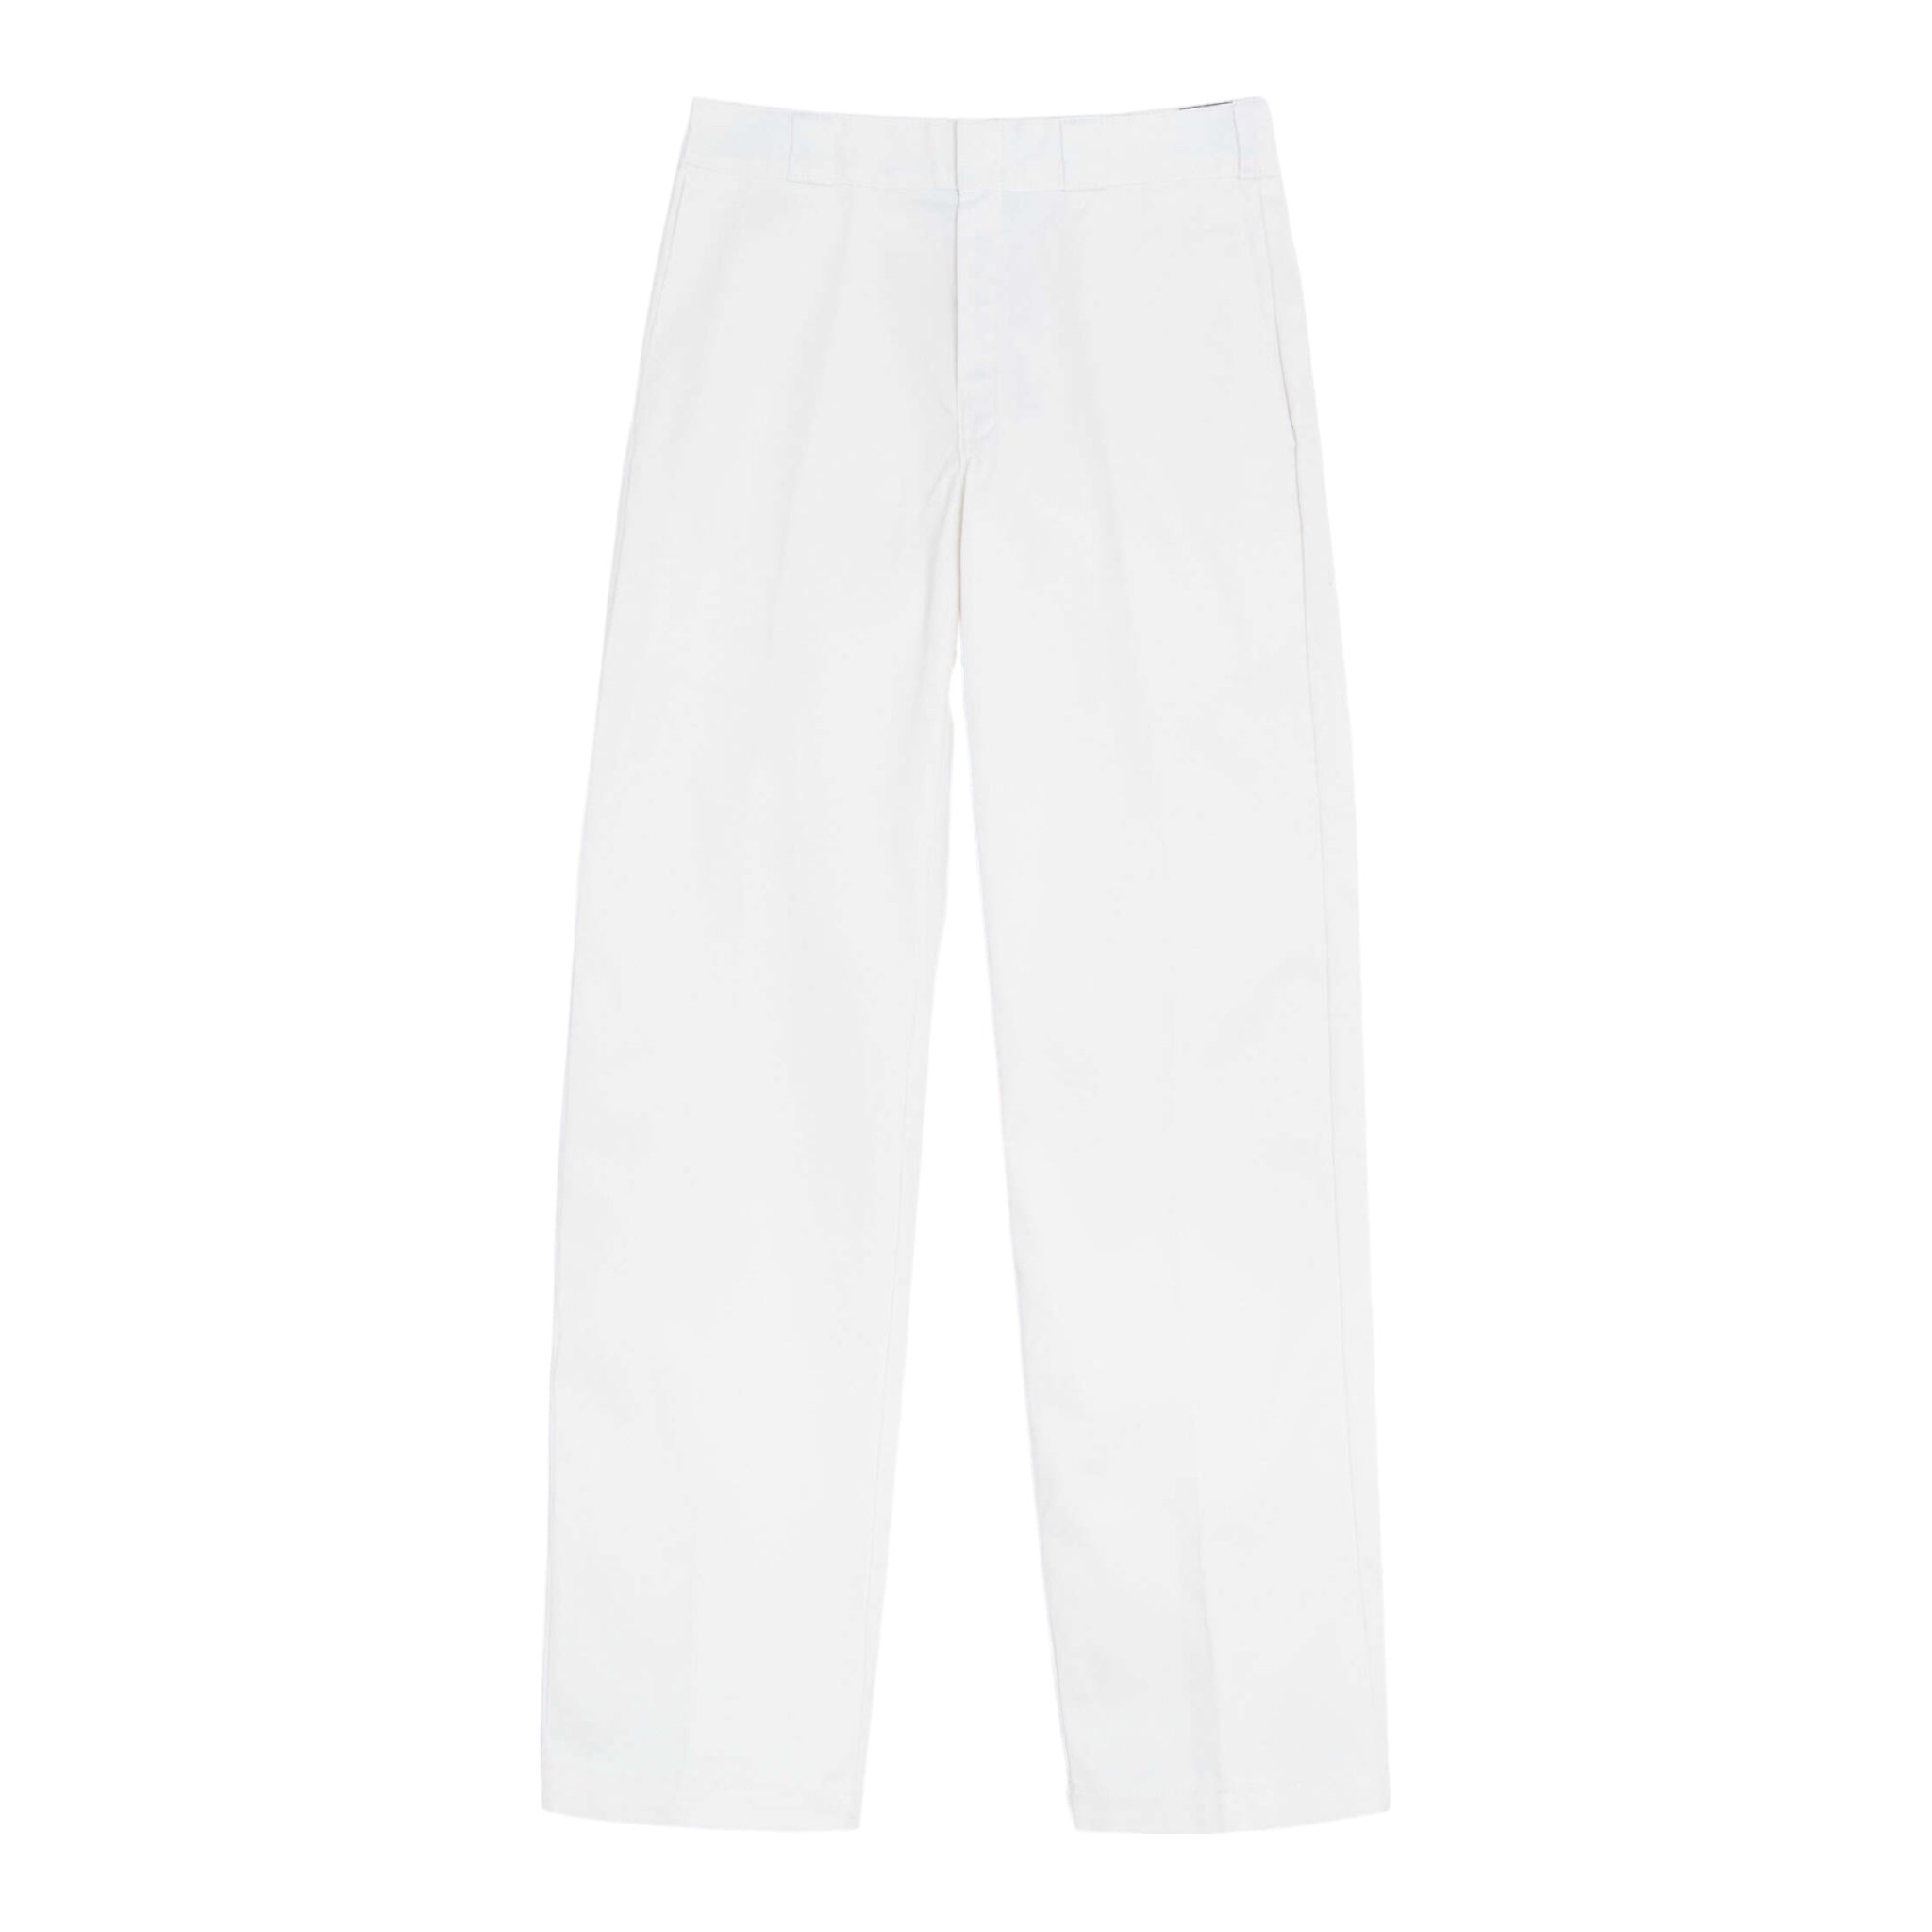 Pantalone 874 Original Fit Bianco DK0A4XK6WHX1